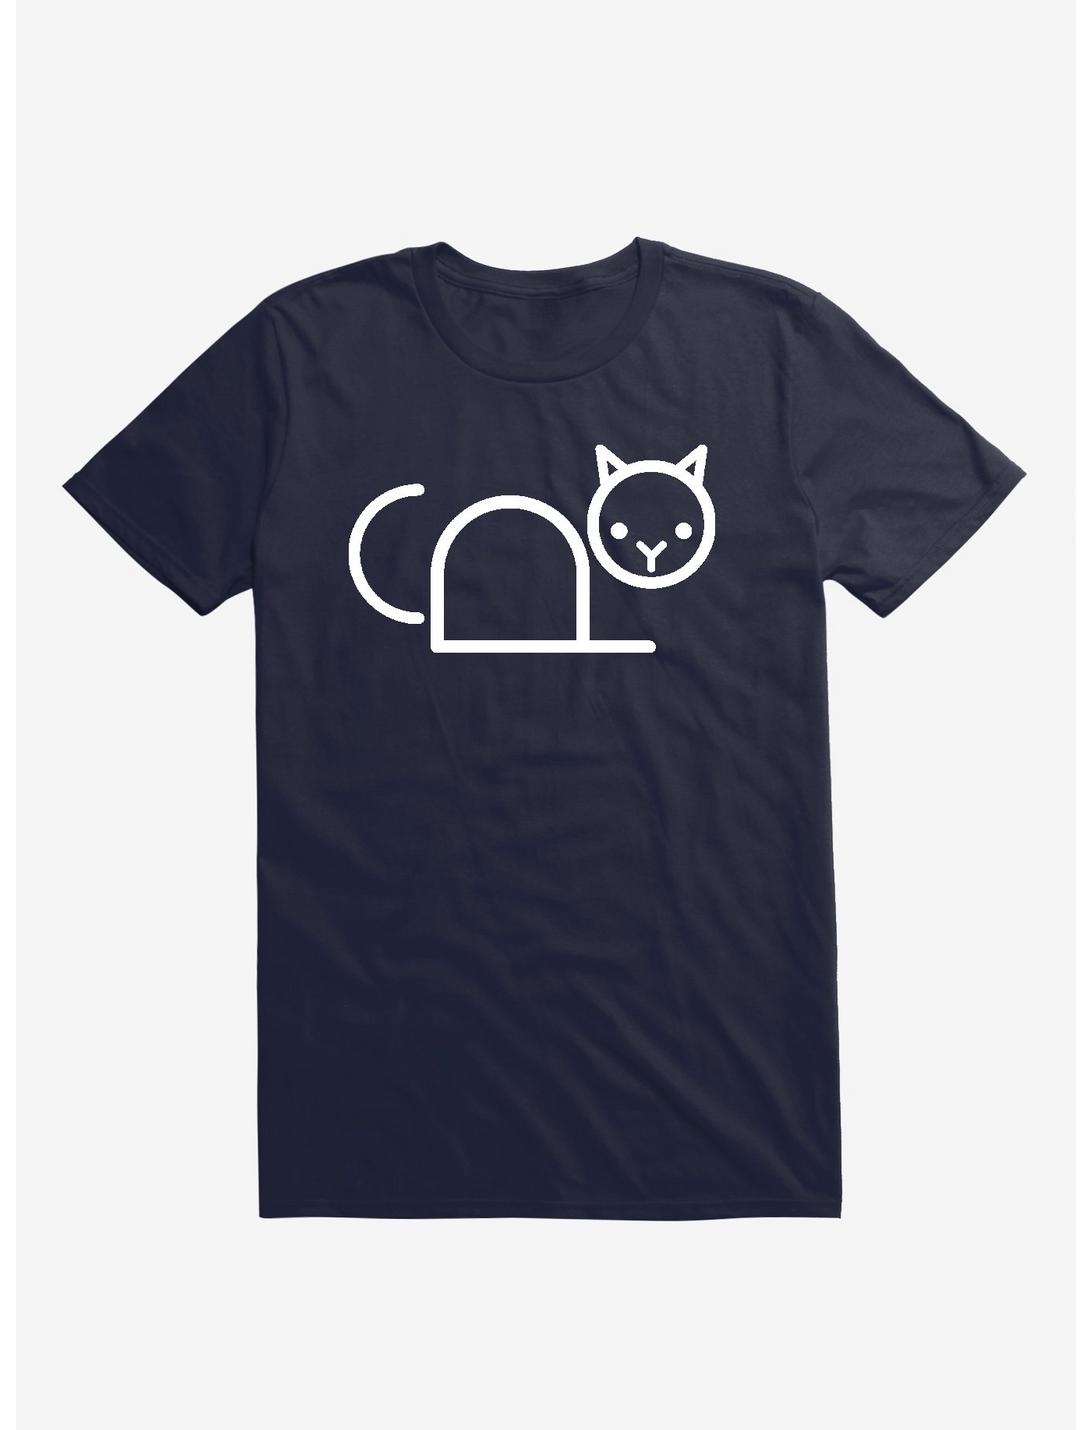 Copy Cat Navy Blue T-Shirt, NAVY, hi-res